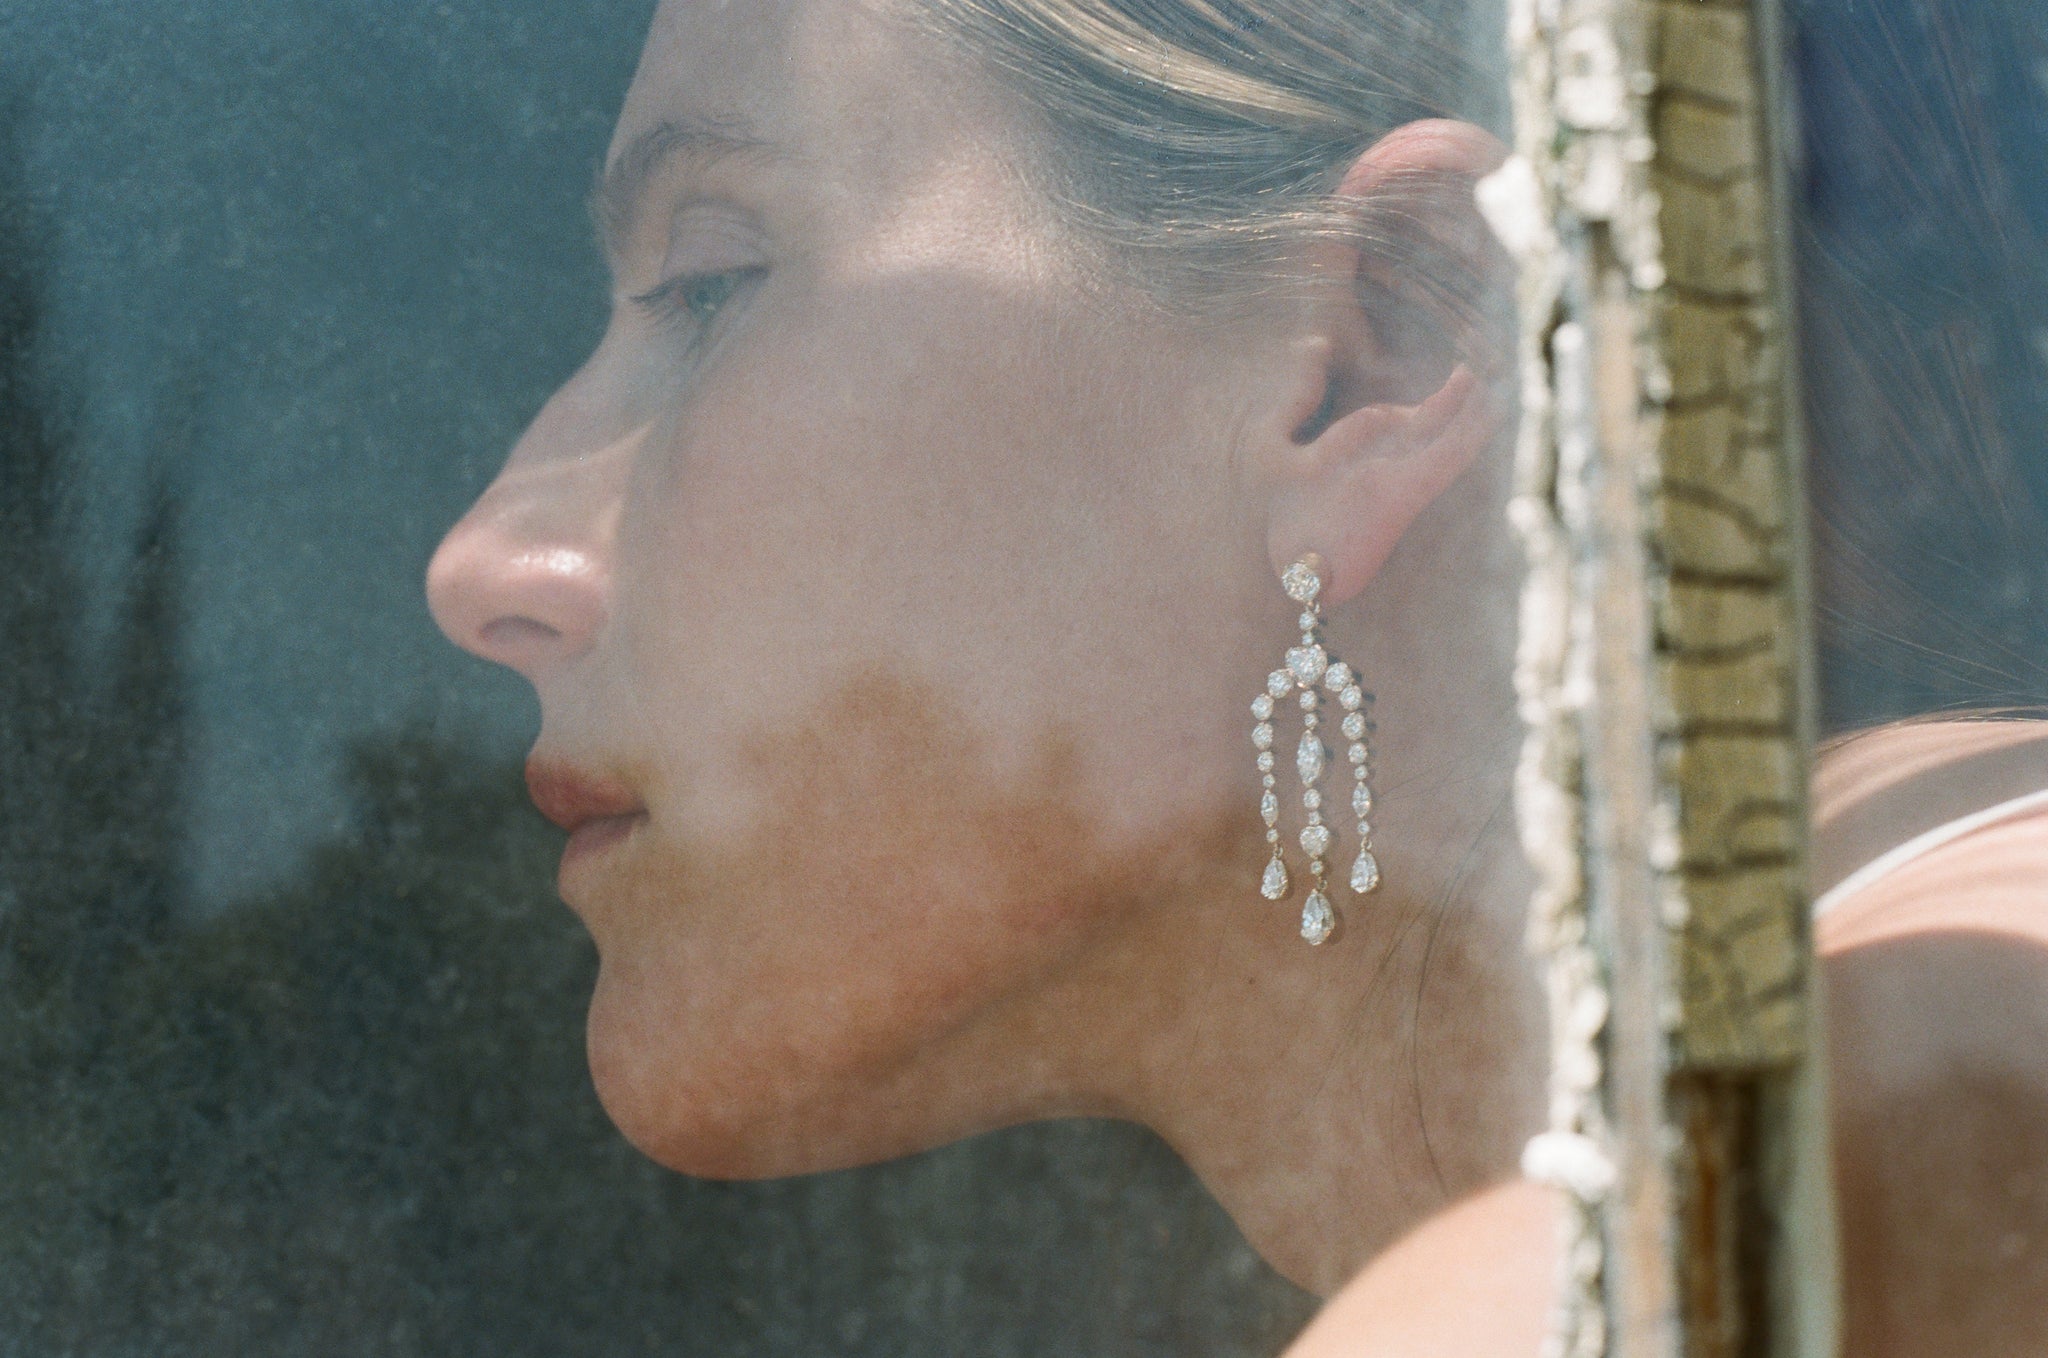 Dree Hemingway wearing Jardin de Cours diamond earrings.